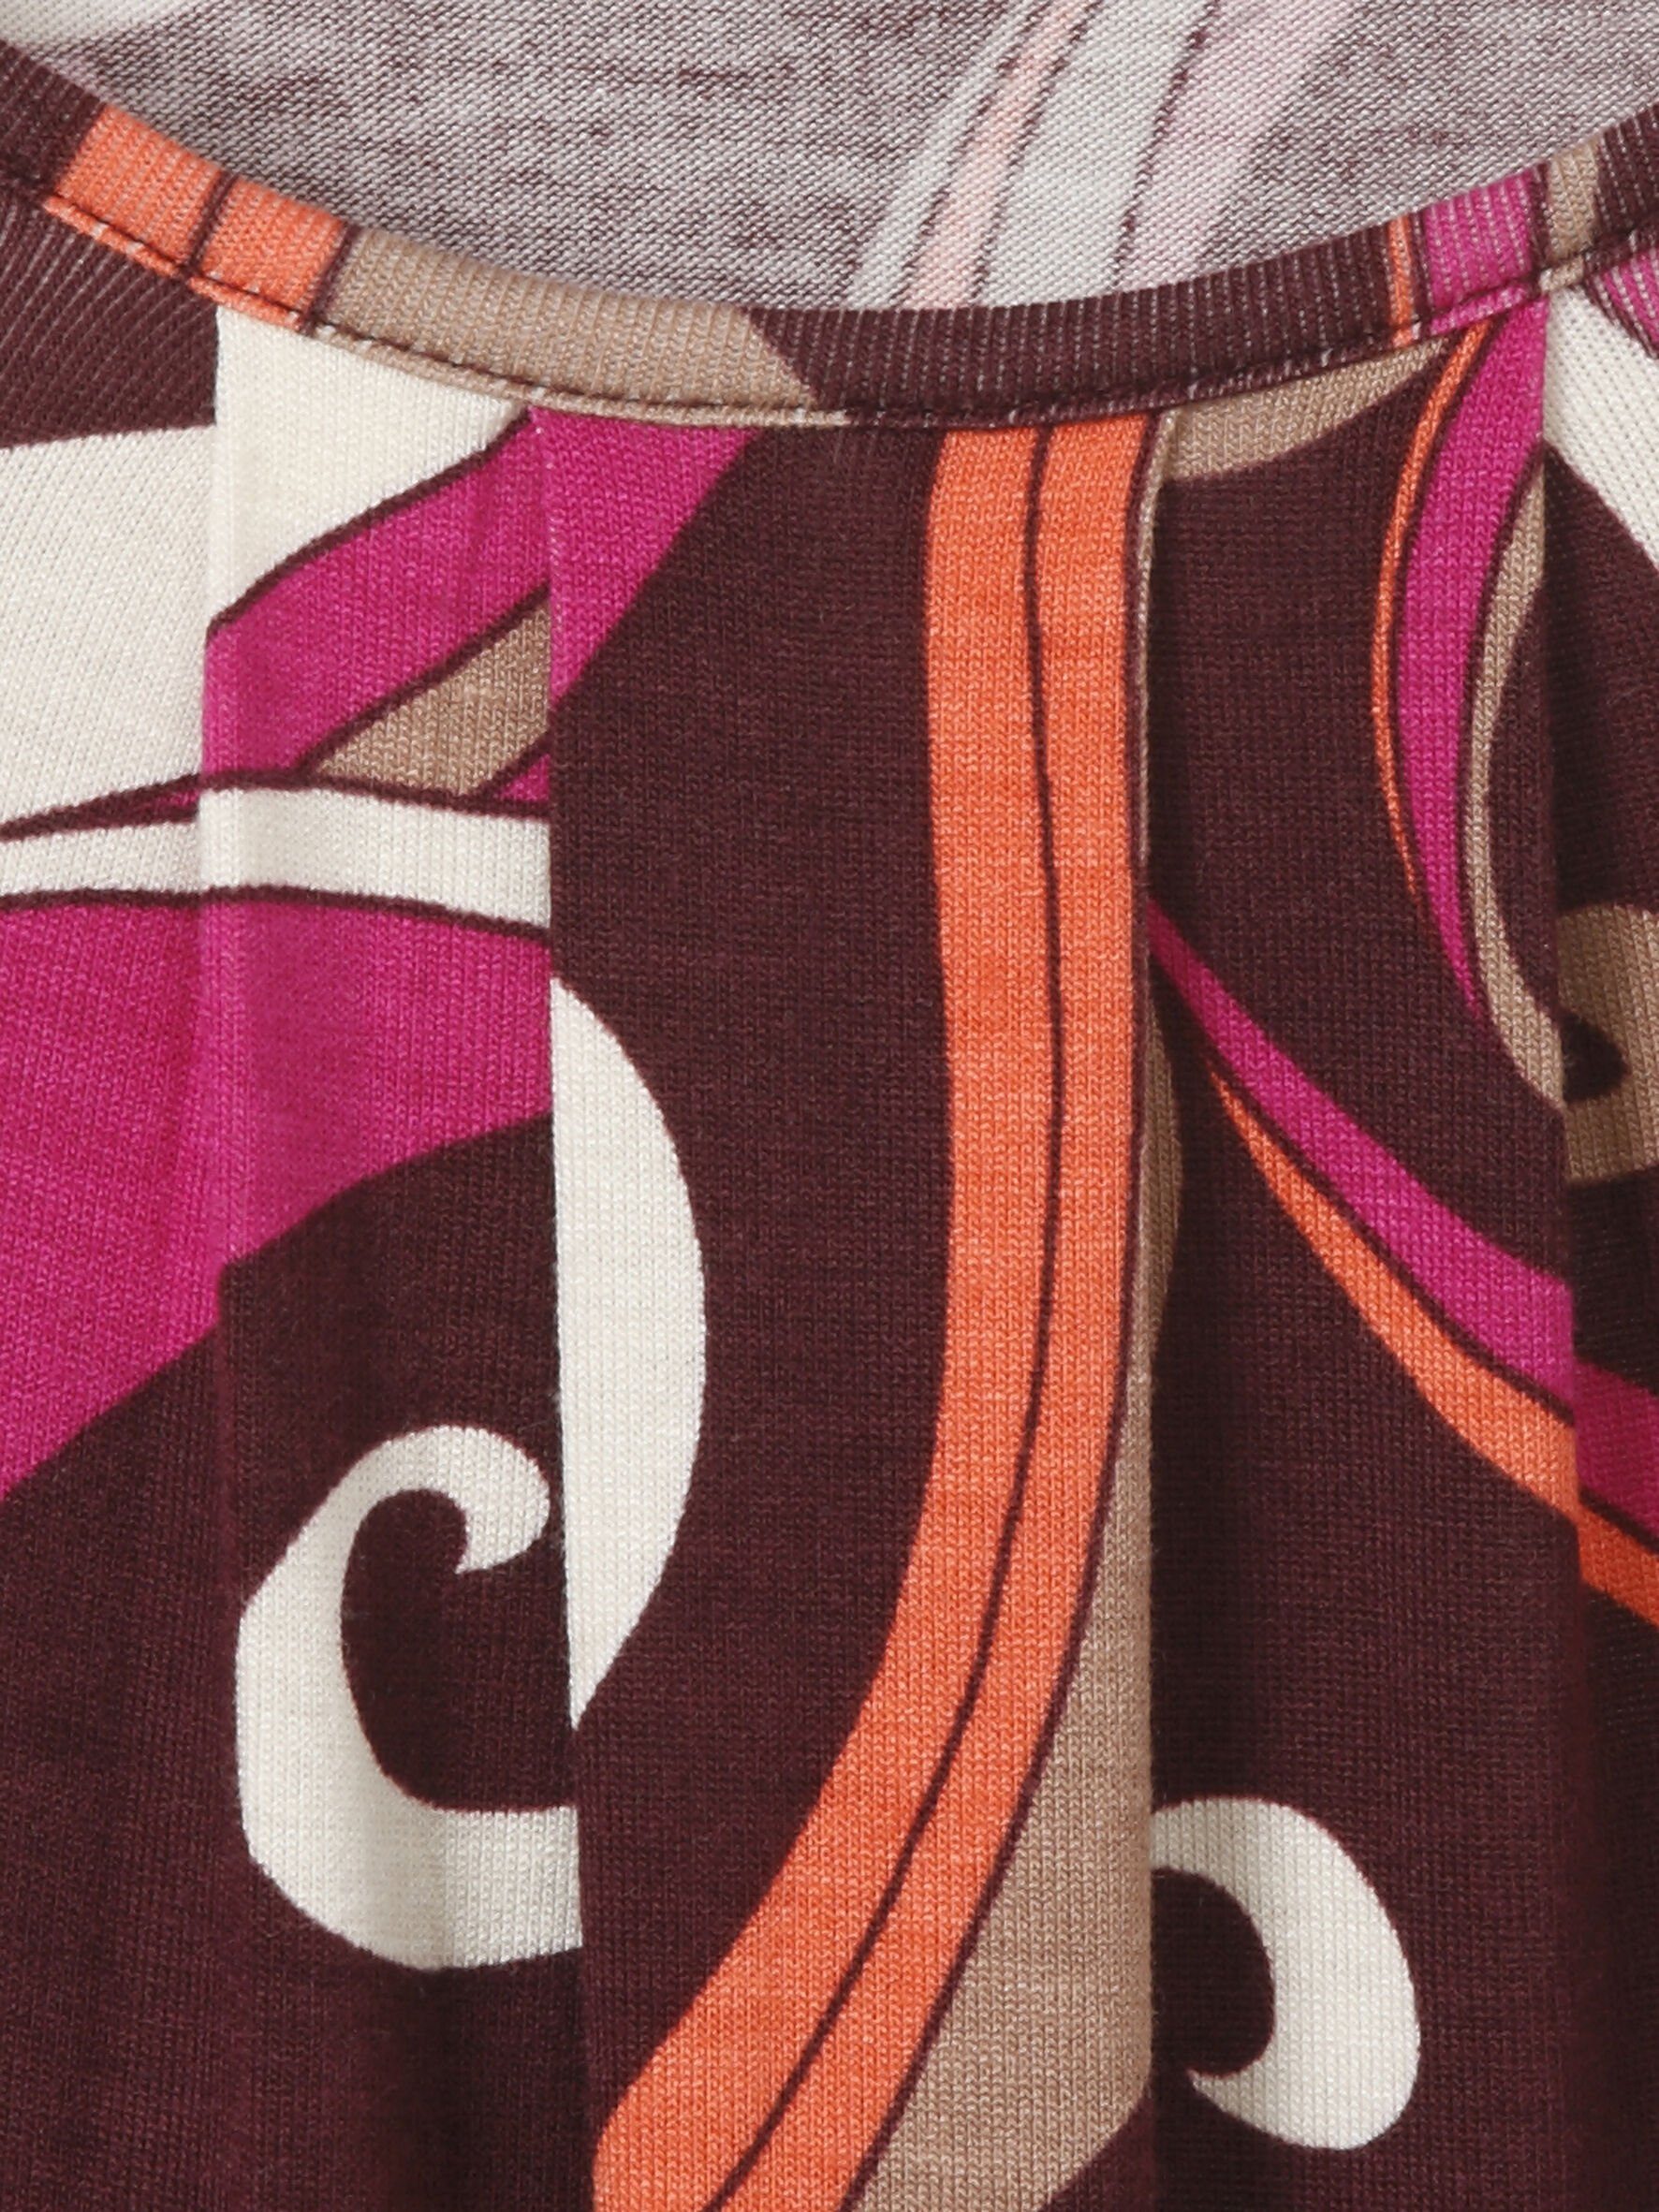 VIA APPIA Print-Shirt mit multicolor Alloverdruck bordeaux DUE